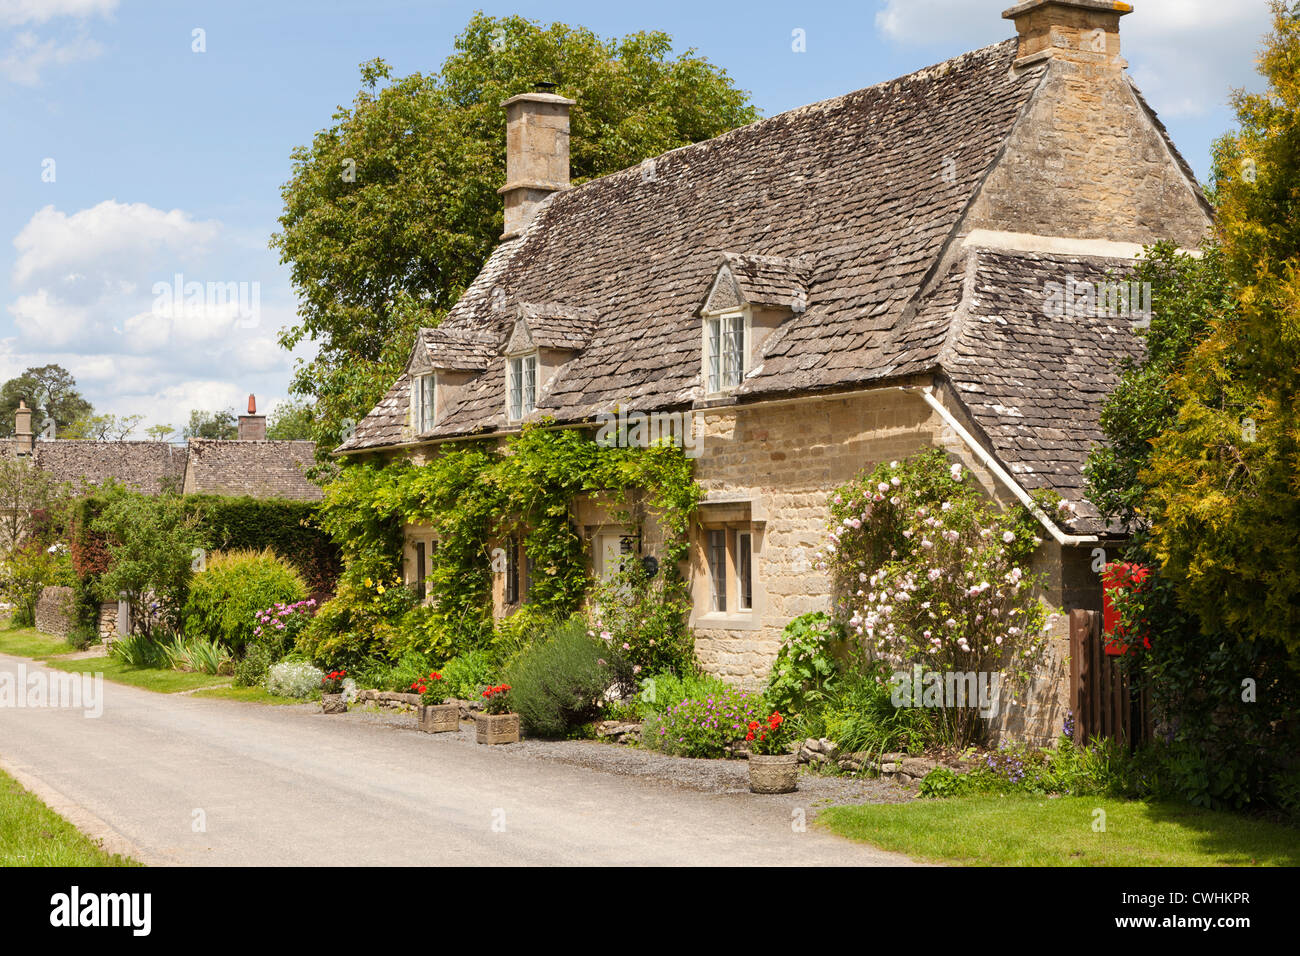 Un cottage traditionnel en pierre typique dans le village de Taynton, Oxfordshire, Royaume-Uni Banque D'Images